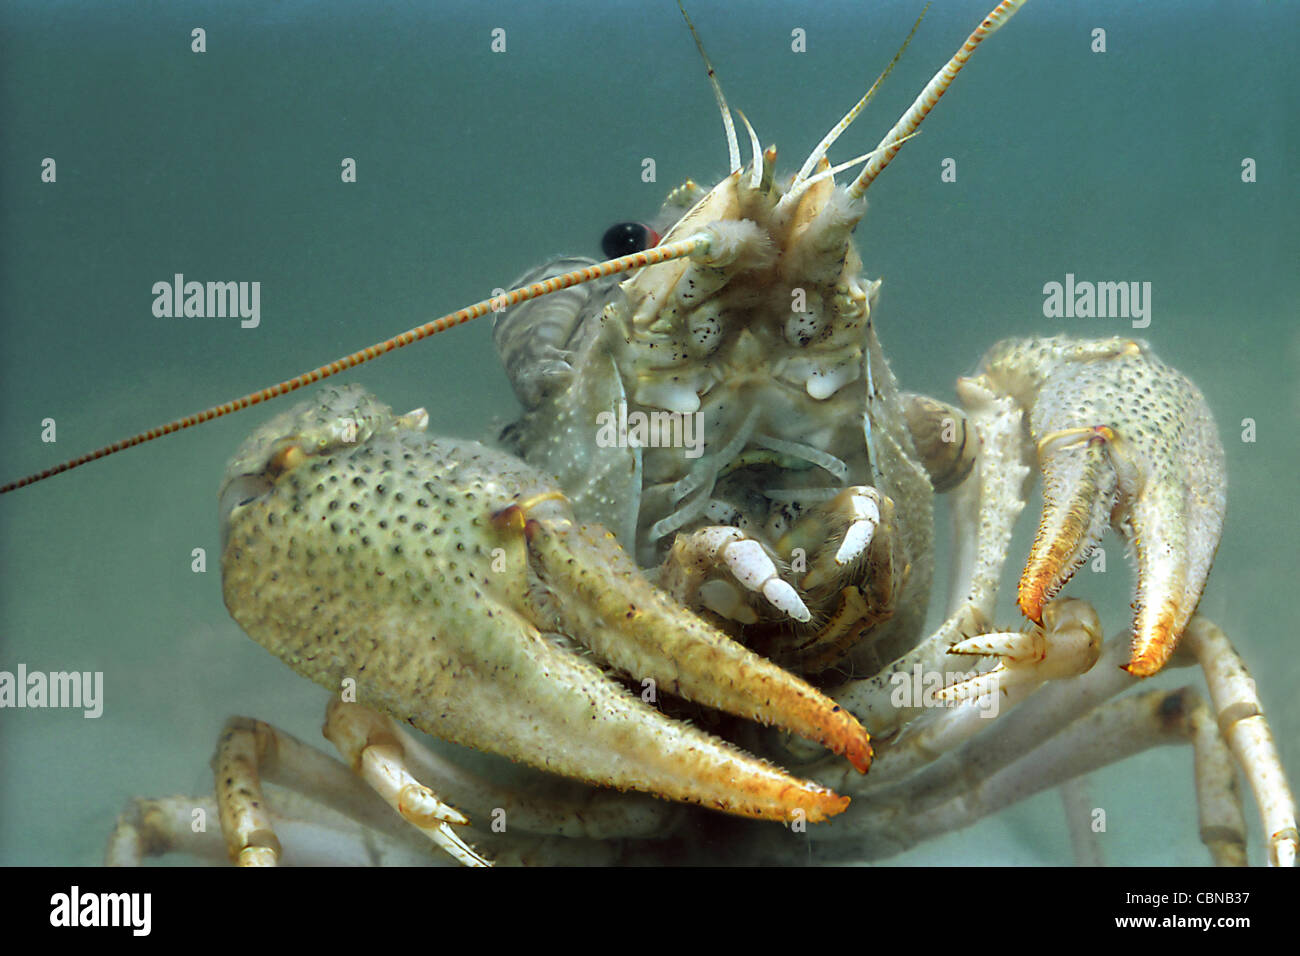 Freshwater crayfish (Astacus leptodactilus) Stock Photo